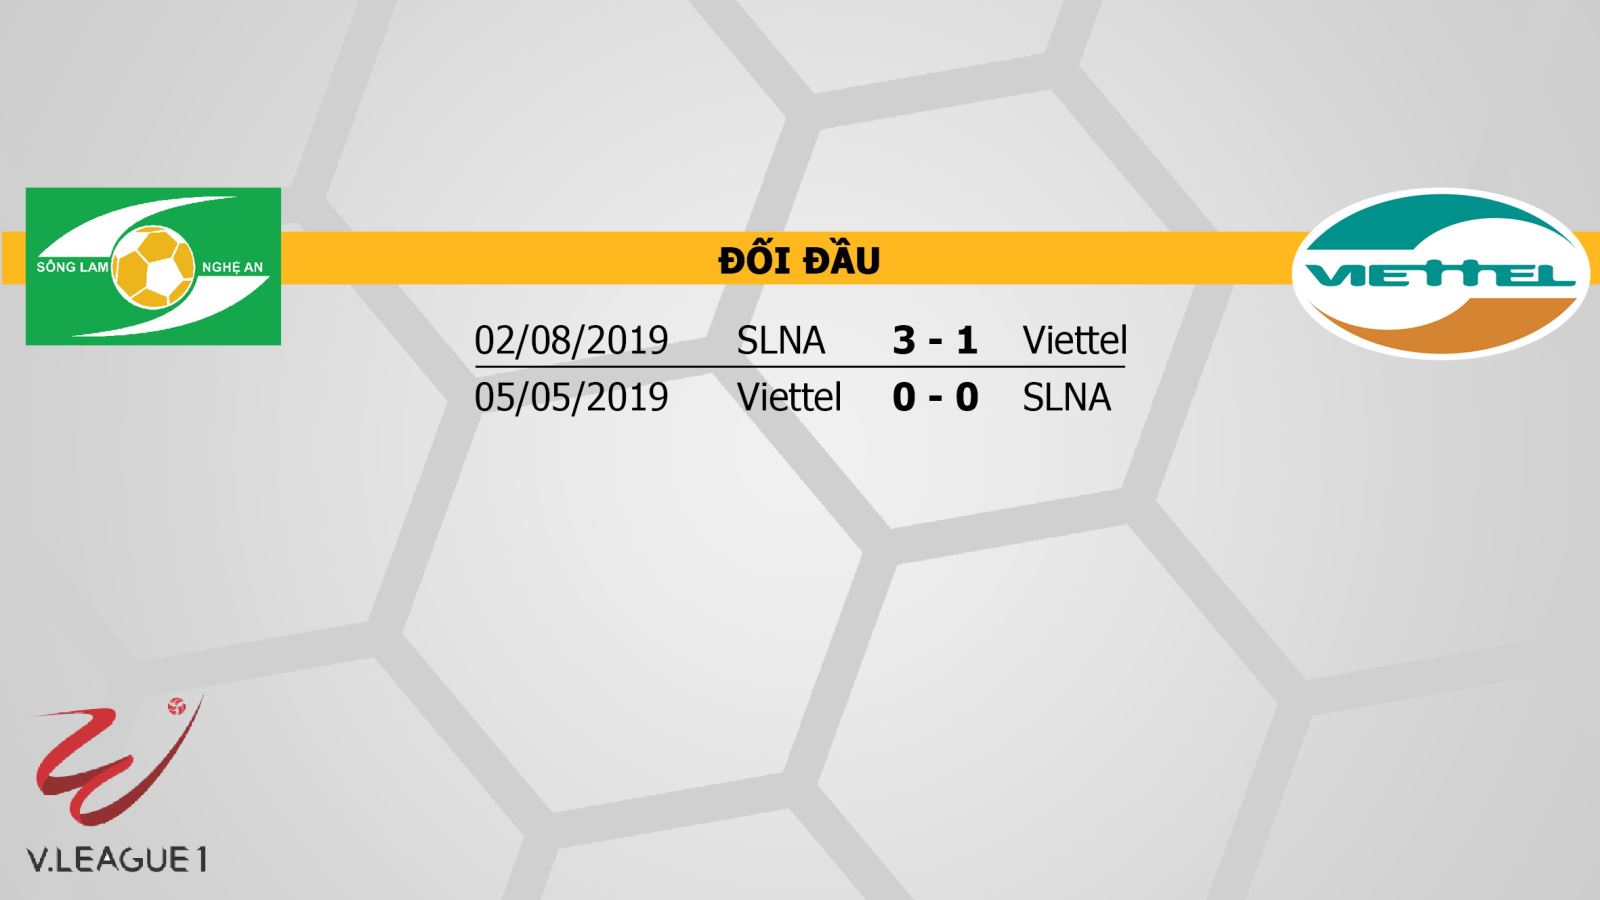 SLNA vs Viettel, SLNA, Viettel, trực tiếp bóng đá, nhận định bóng đá bóng đá, lịch thi đấu bóng đá, nhận định, trực tiếp SLNA vs Viettel